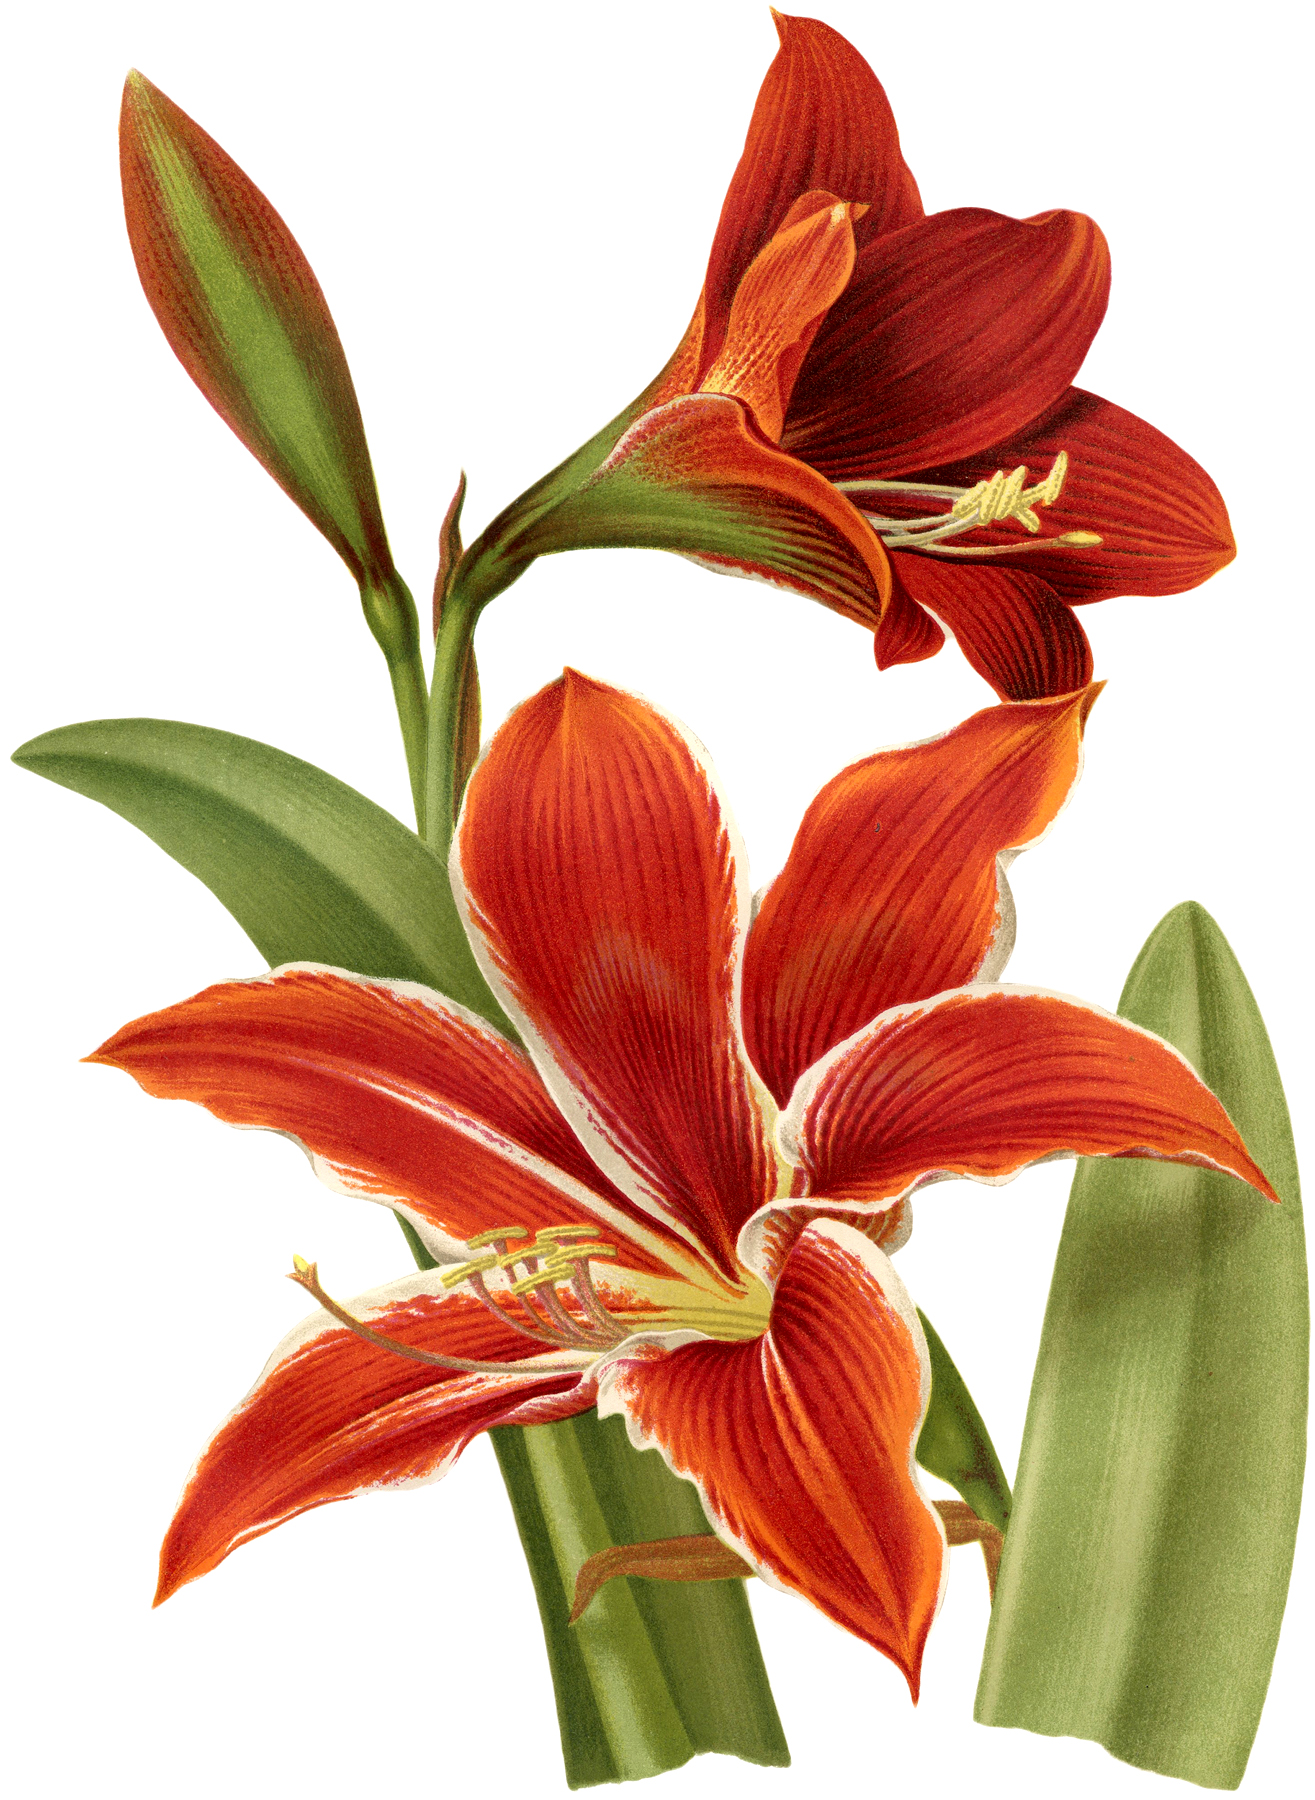 5-amaryllis-images-beautiful-botanicals-the-graphics-fairy